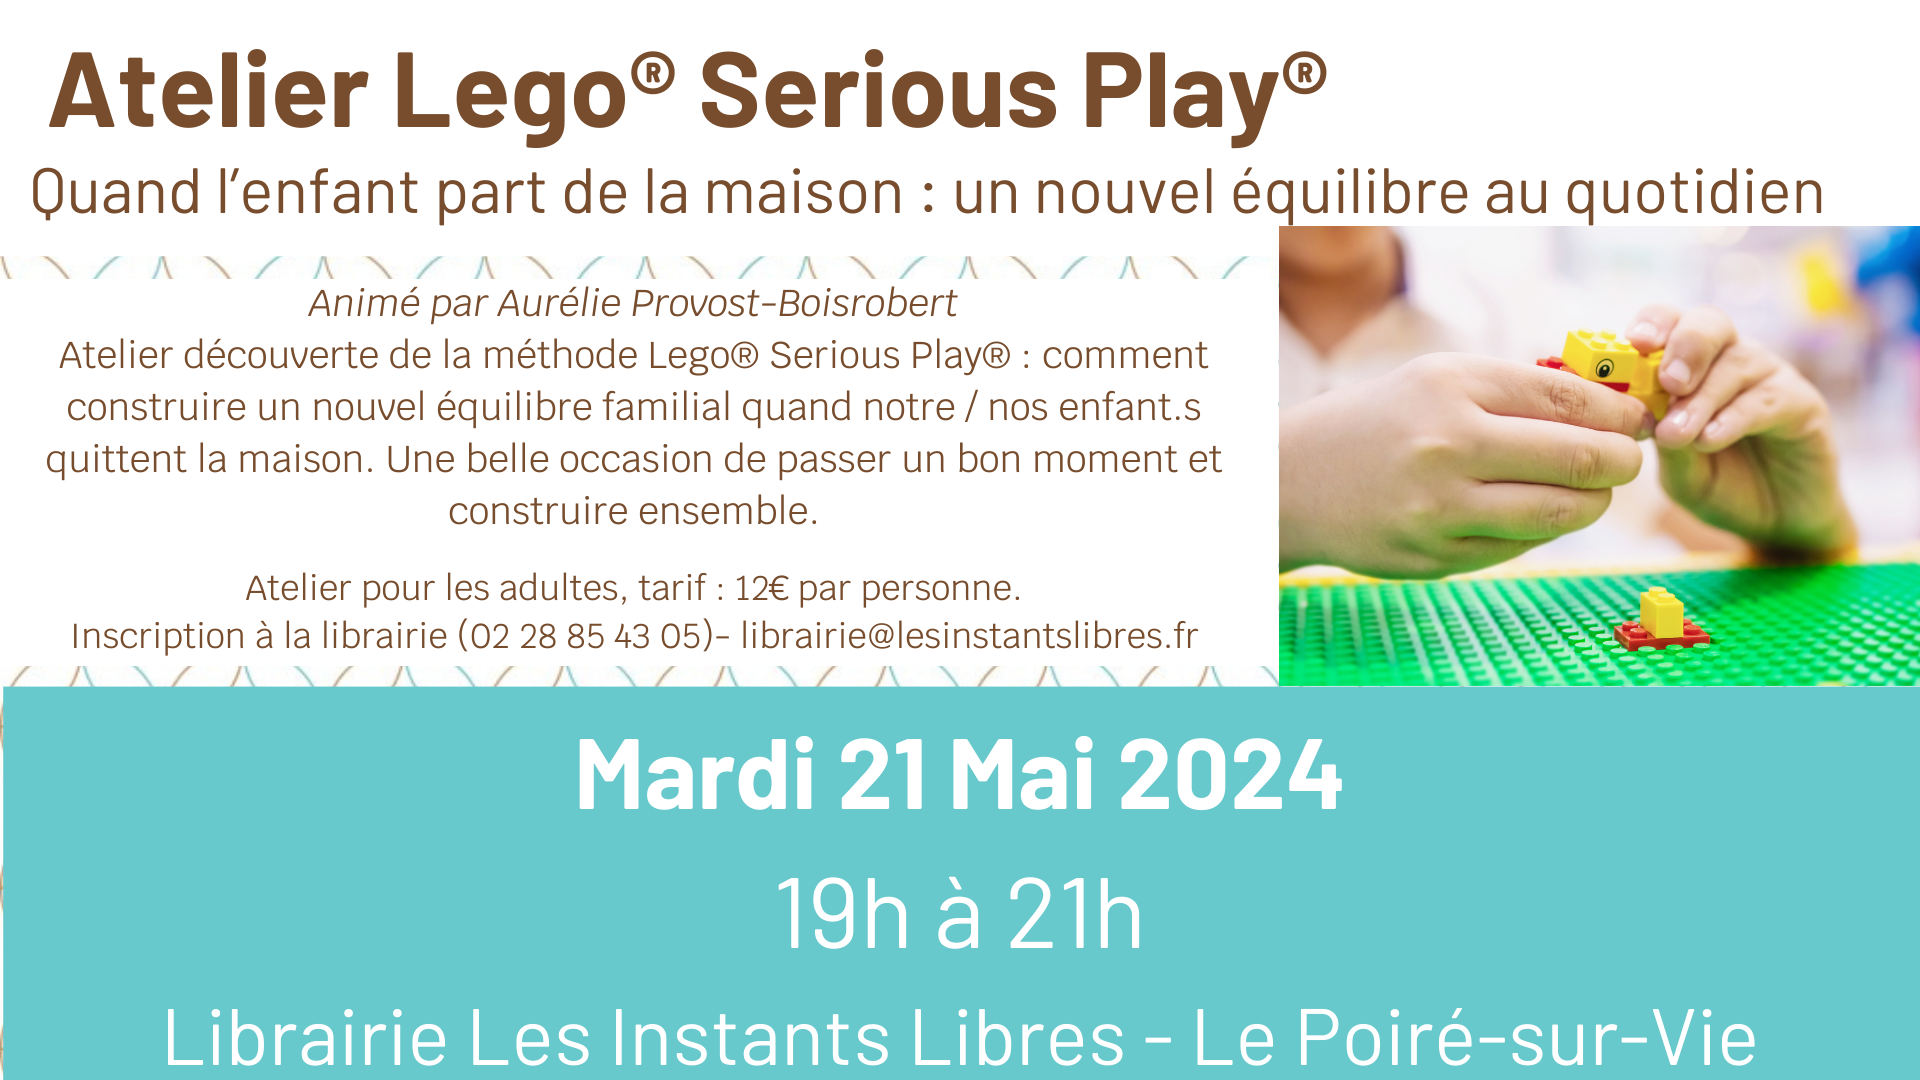 Atelier Lego® Serious Play ®